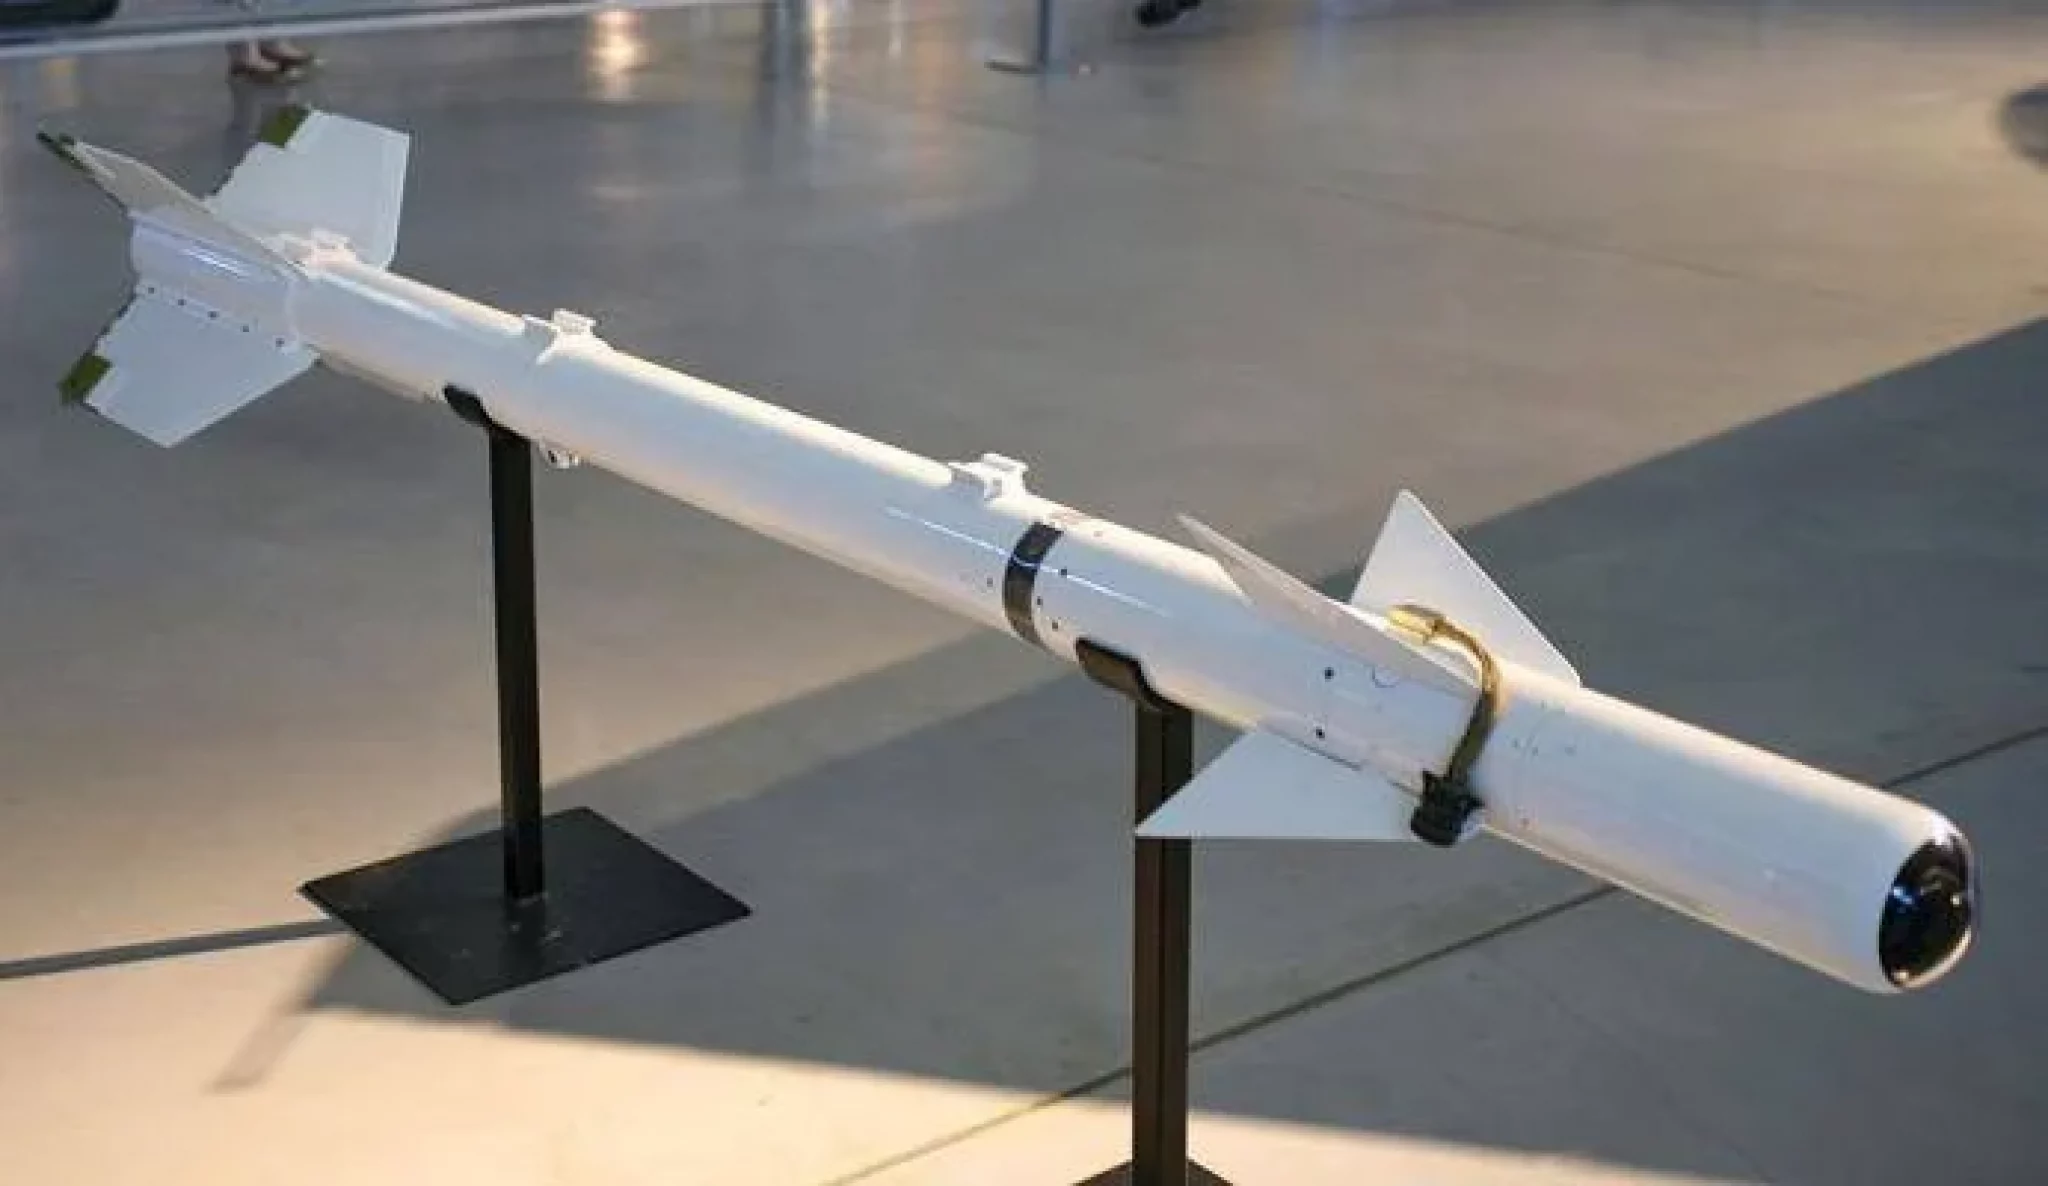 Авиационные ракеты "воздух-воздух": характеристики